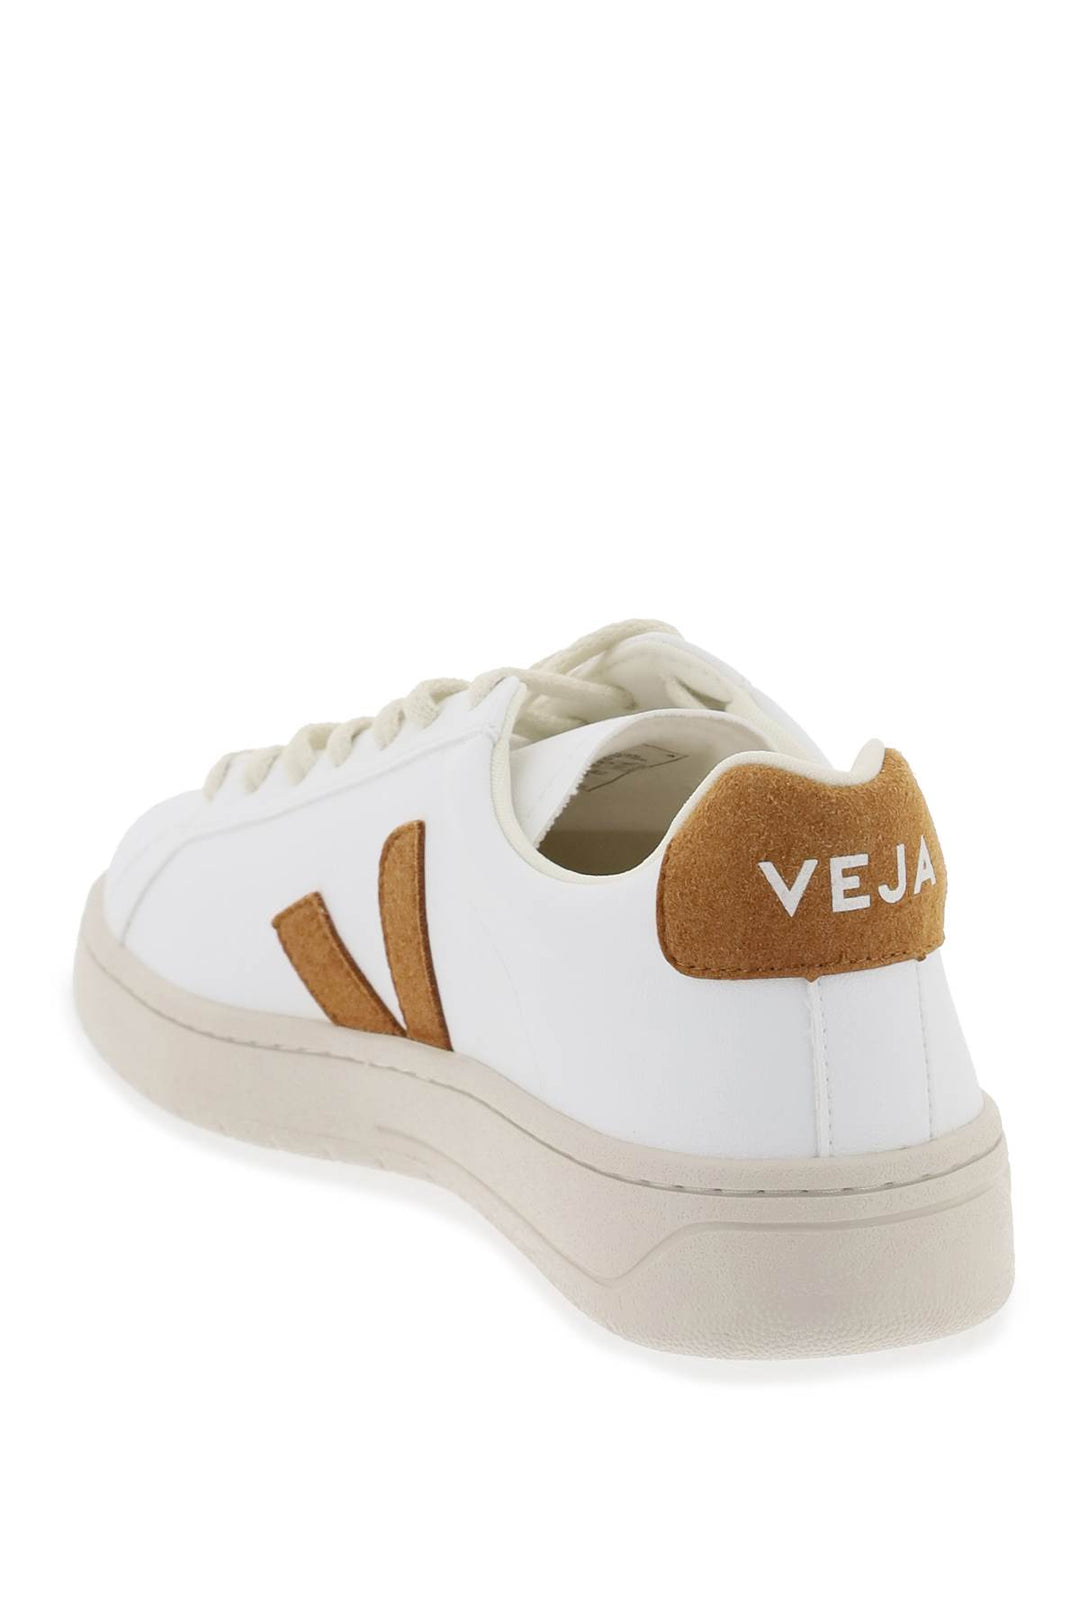 Veja 'Urca' Vegan Sneakers   White